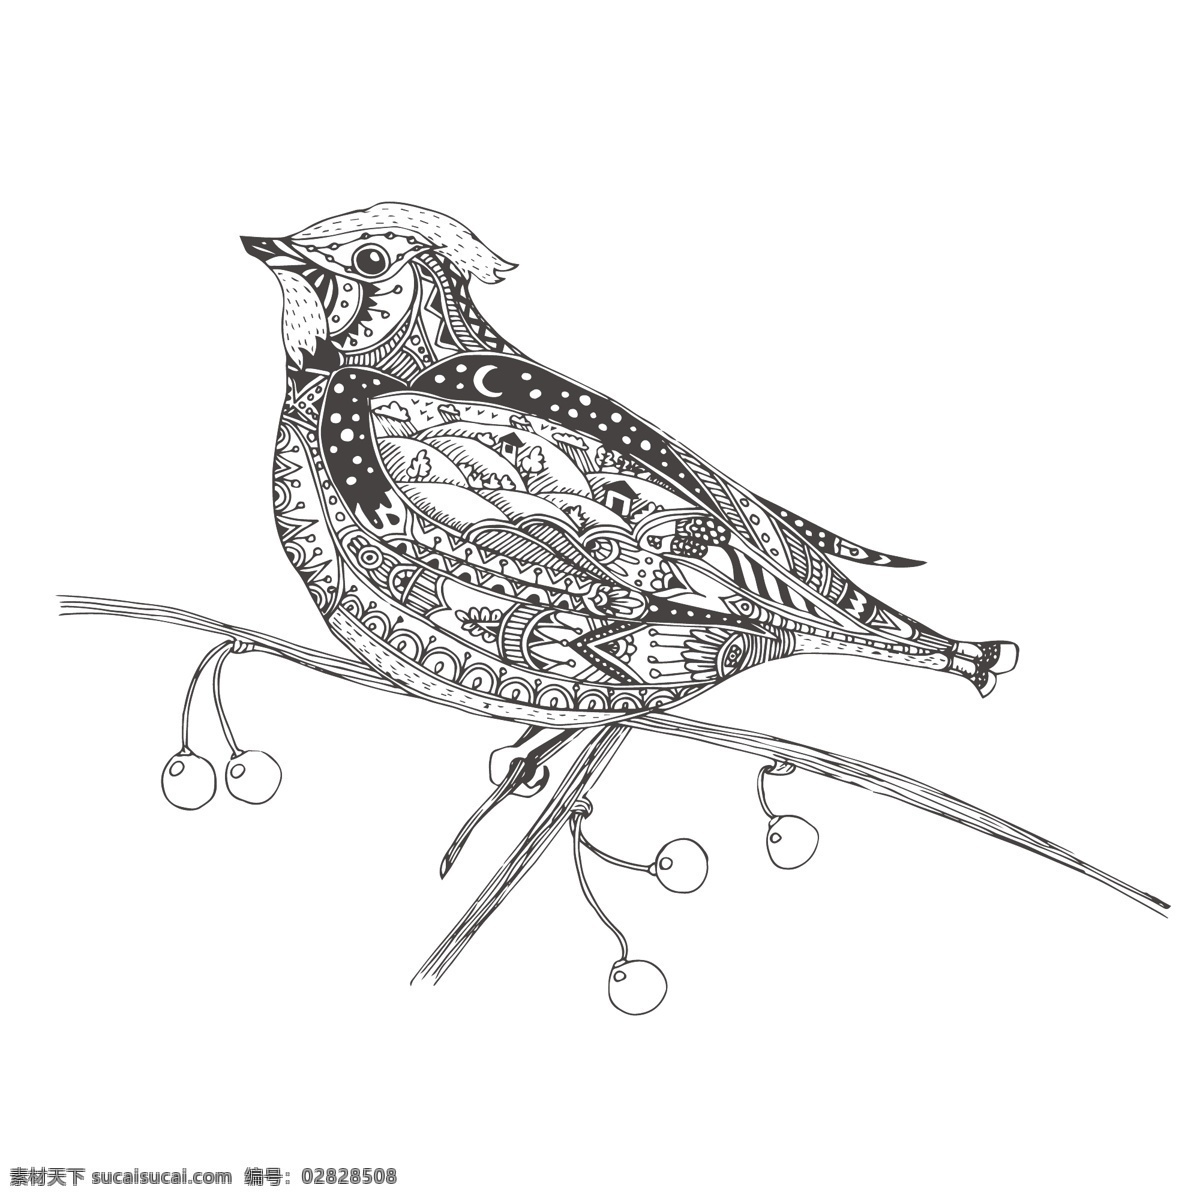 黑白 时尚 艺术 小鸟 插画 动物 花纹 线条